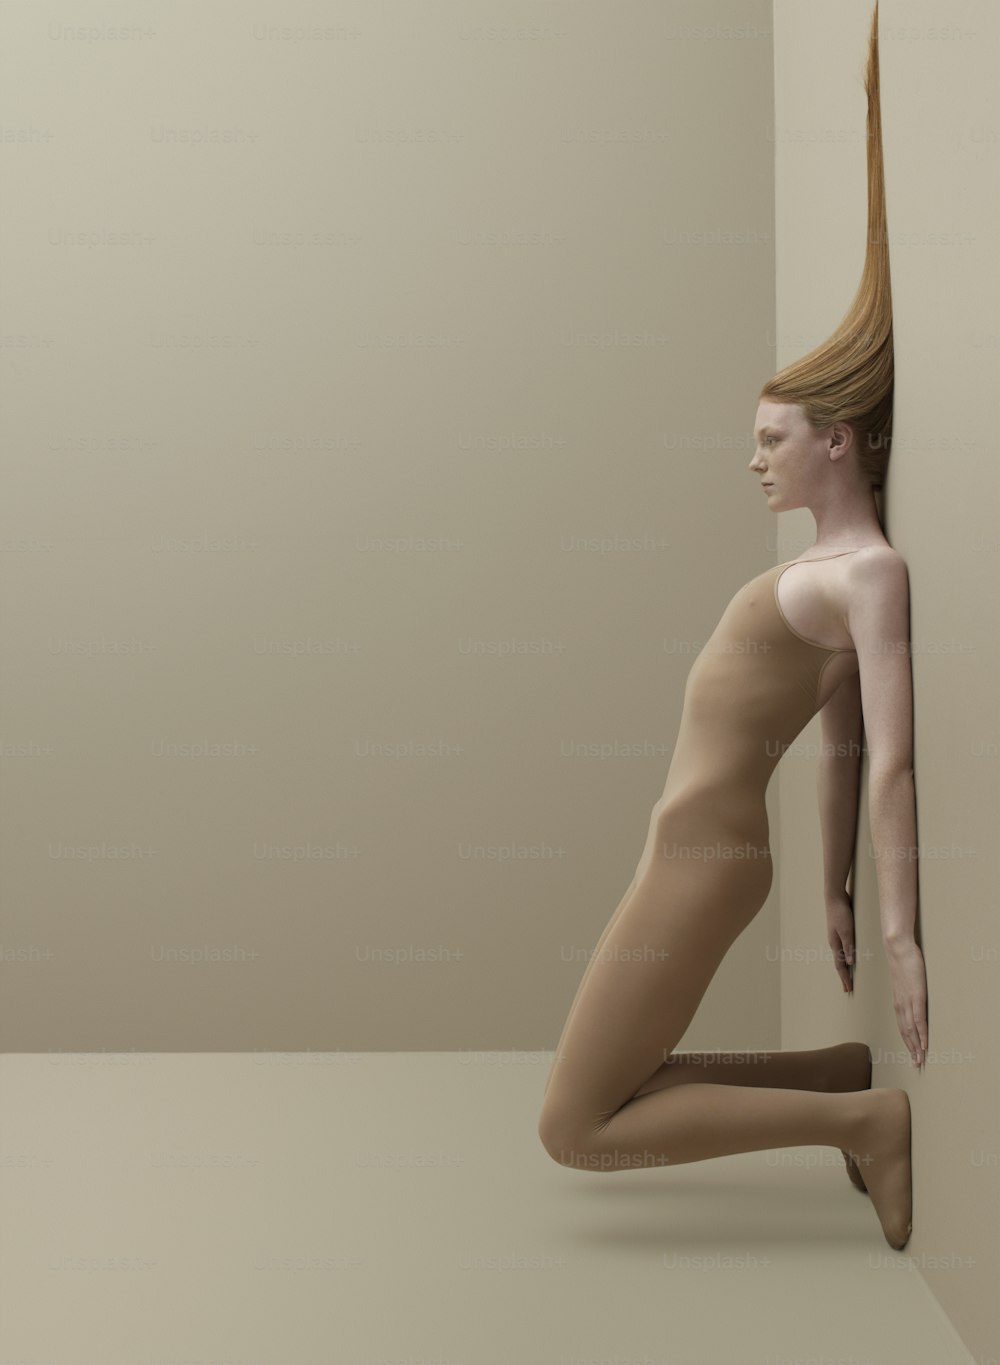 Une femme nue est appuyée contre un mur